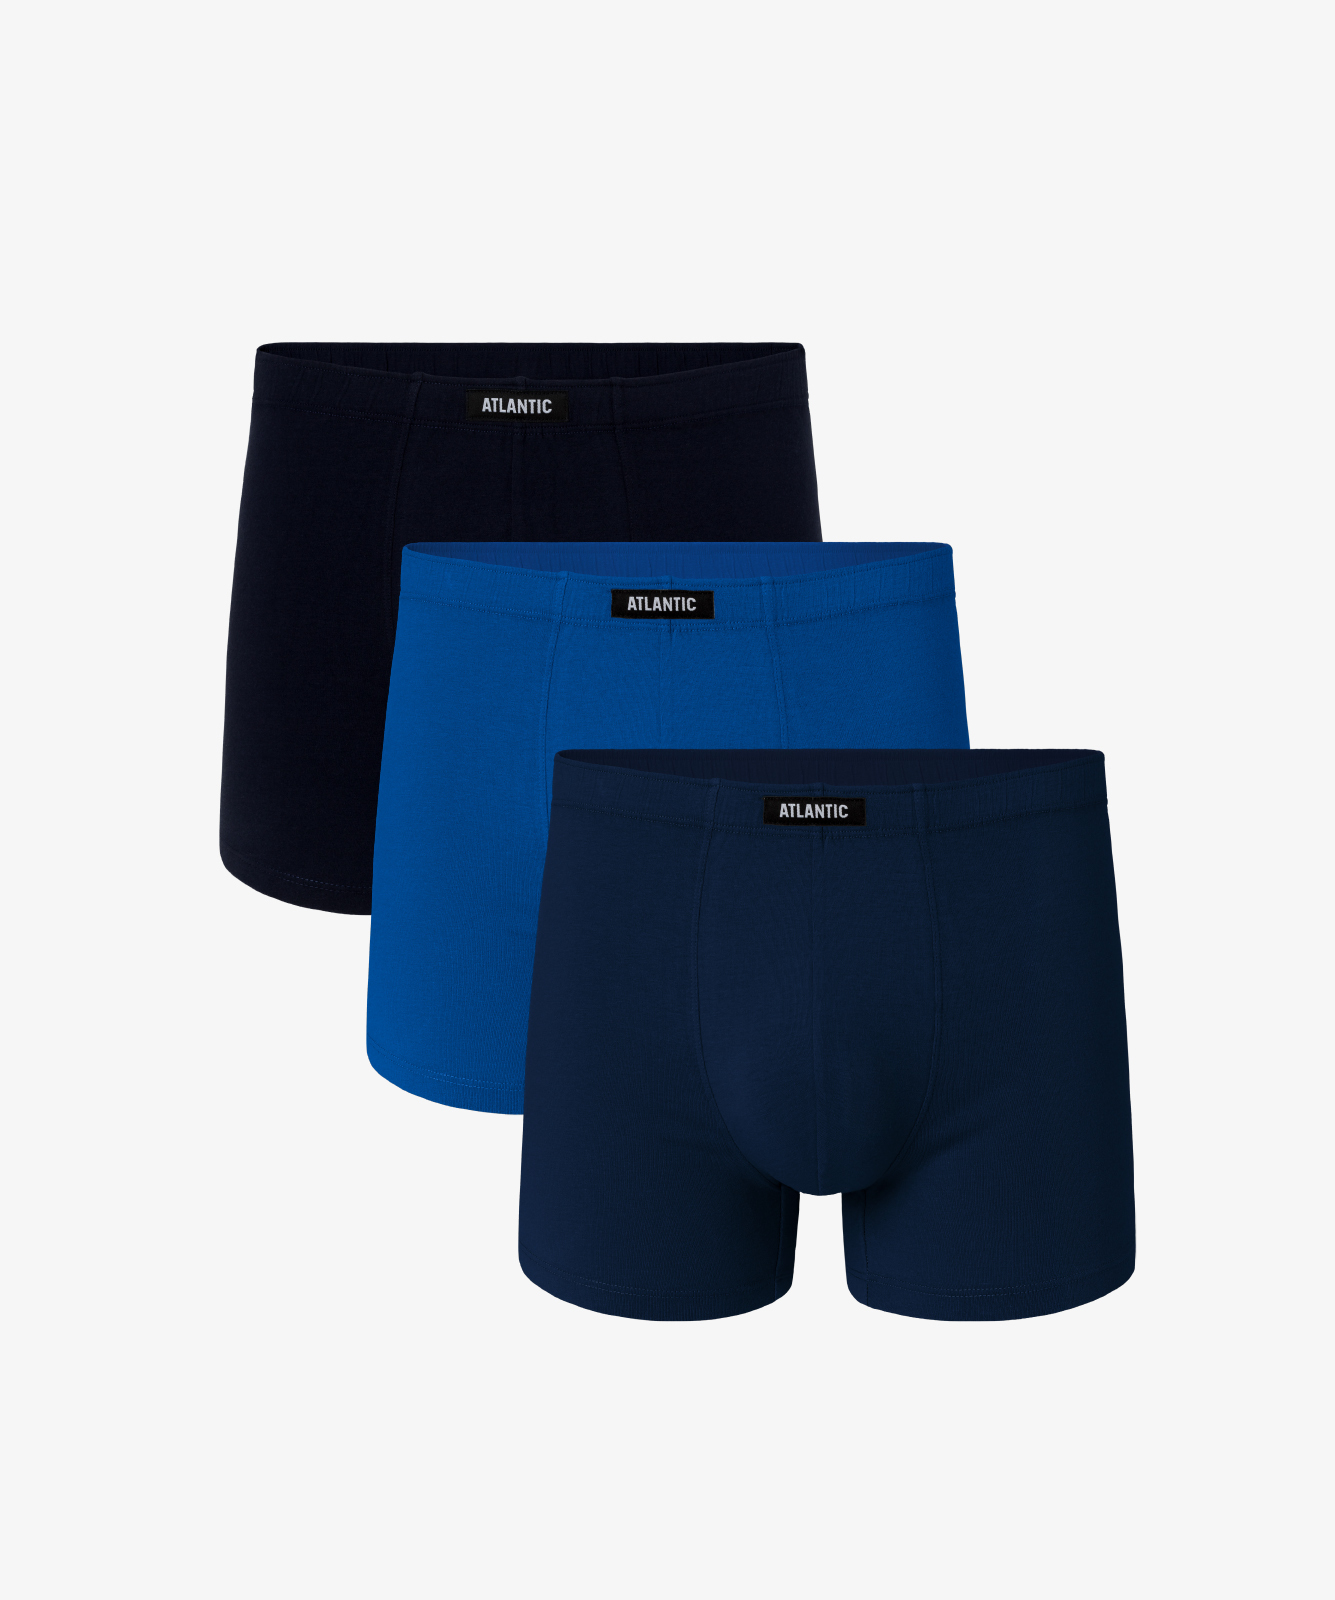 Мужские трусы шорты Atlantic, набор из 3 шт., хлопок, темно-синие + голубые + темно-голубые, 3MH-048